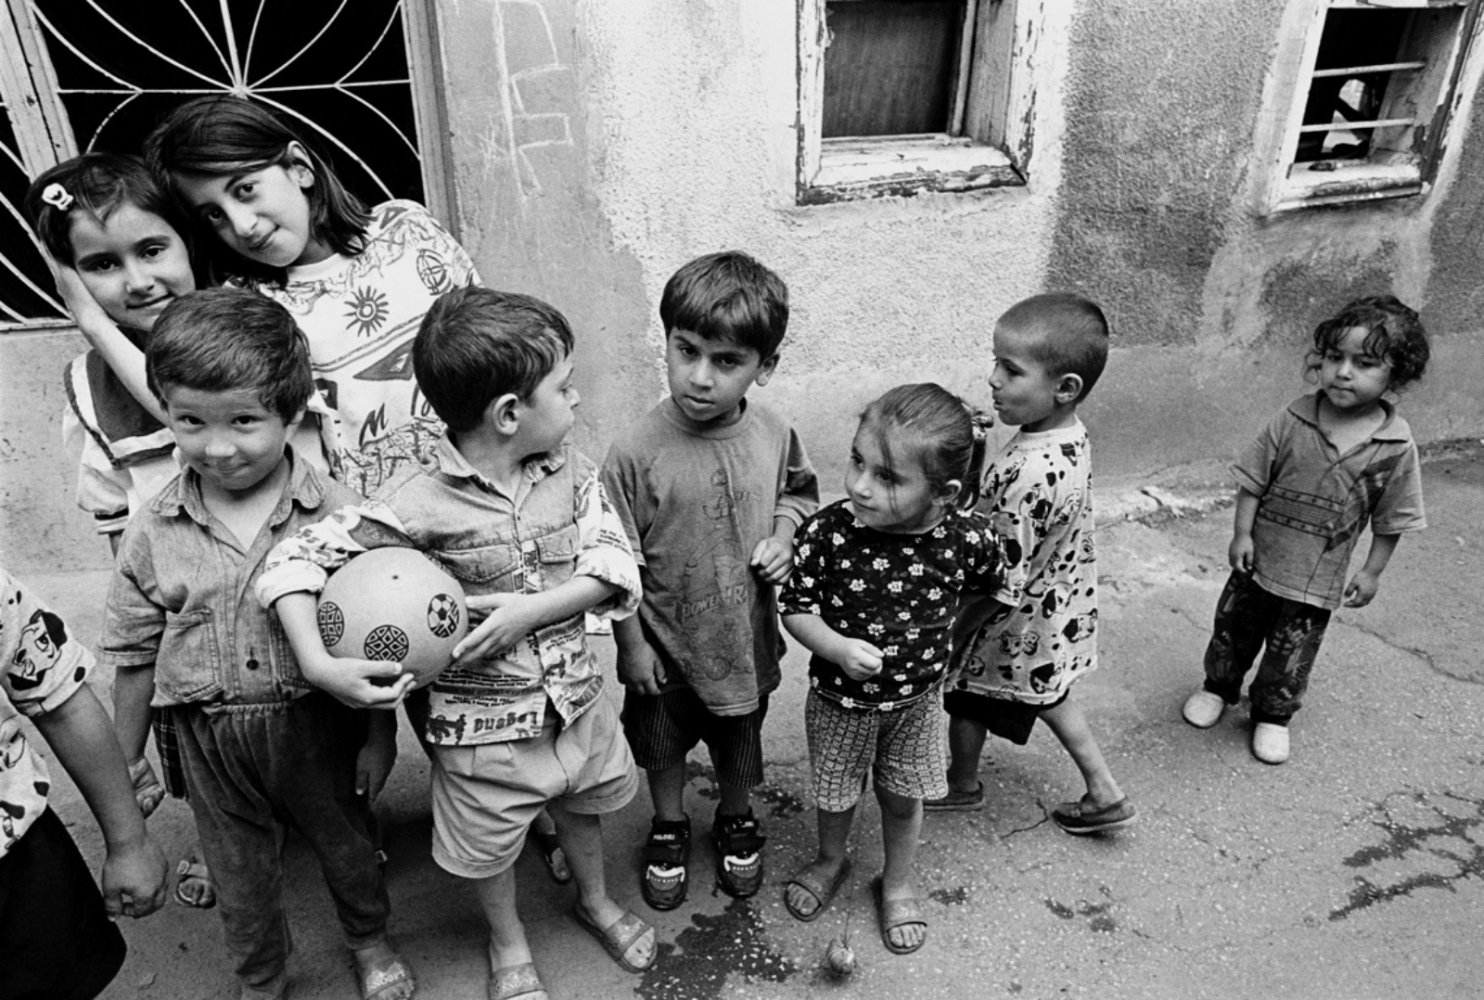 Turkey -  Kids, Turkey, Summer 1997 